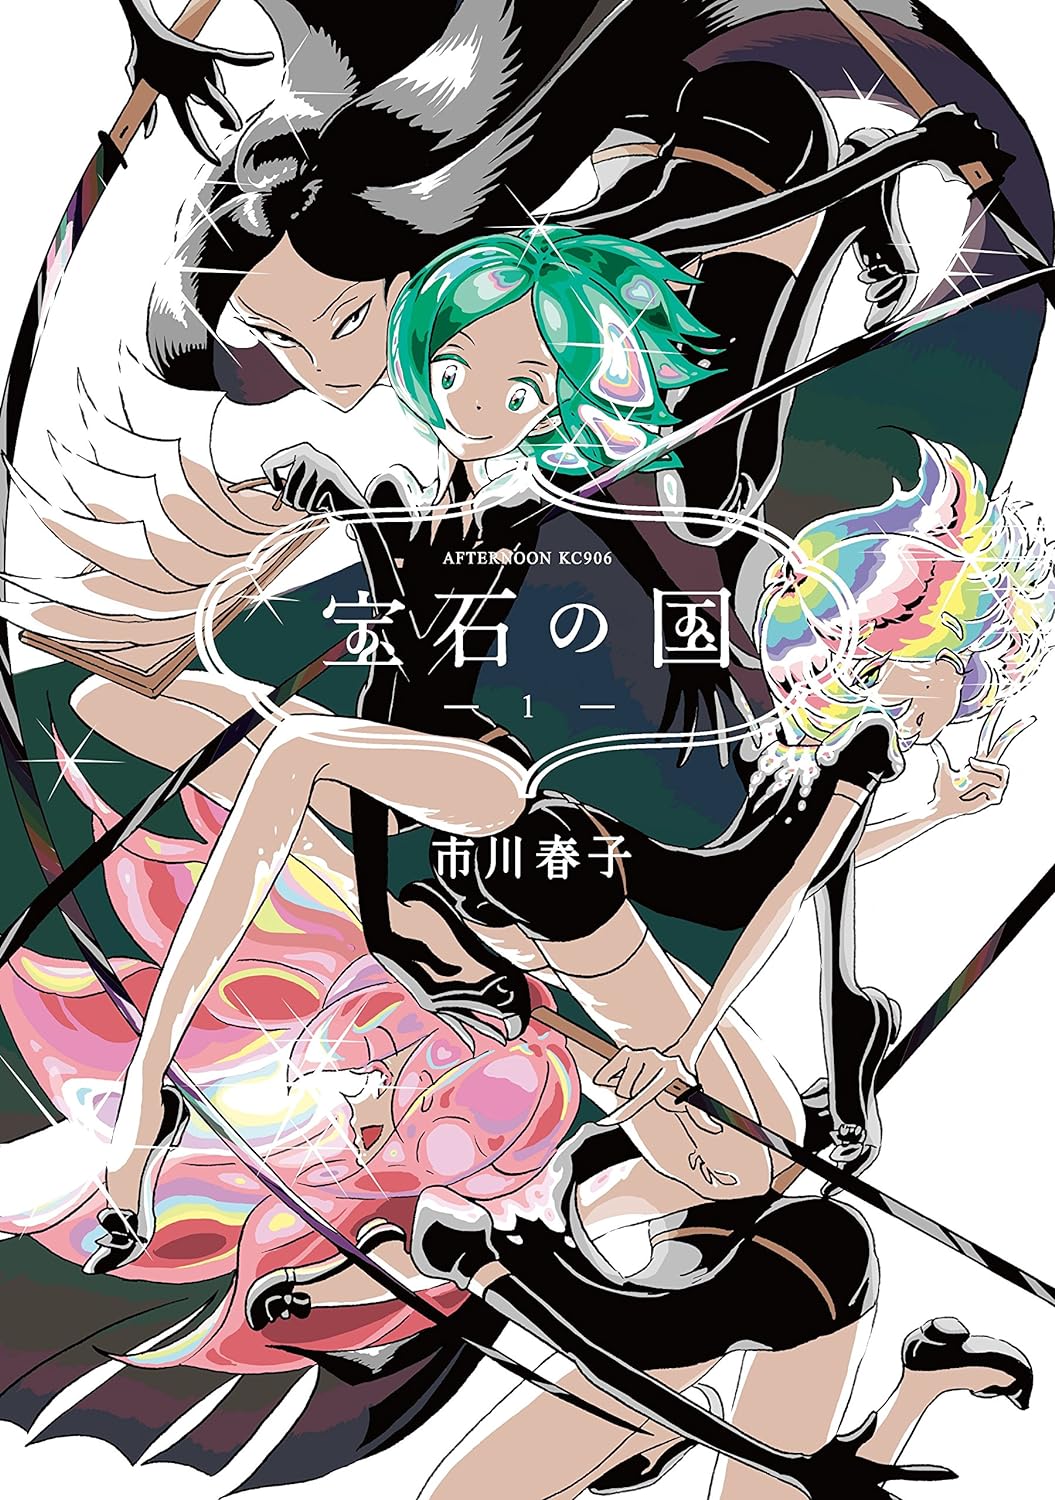 Houseki no Kuni Manga Cover Volume 1